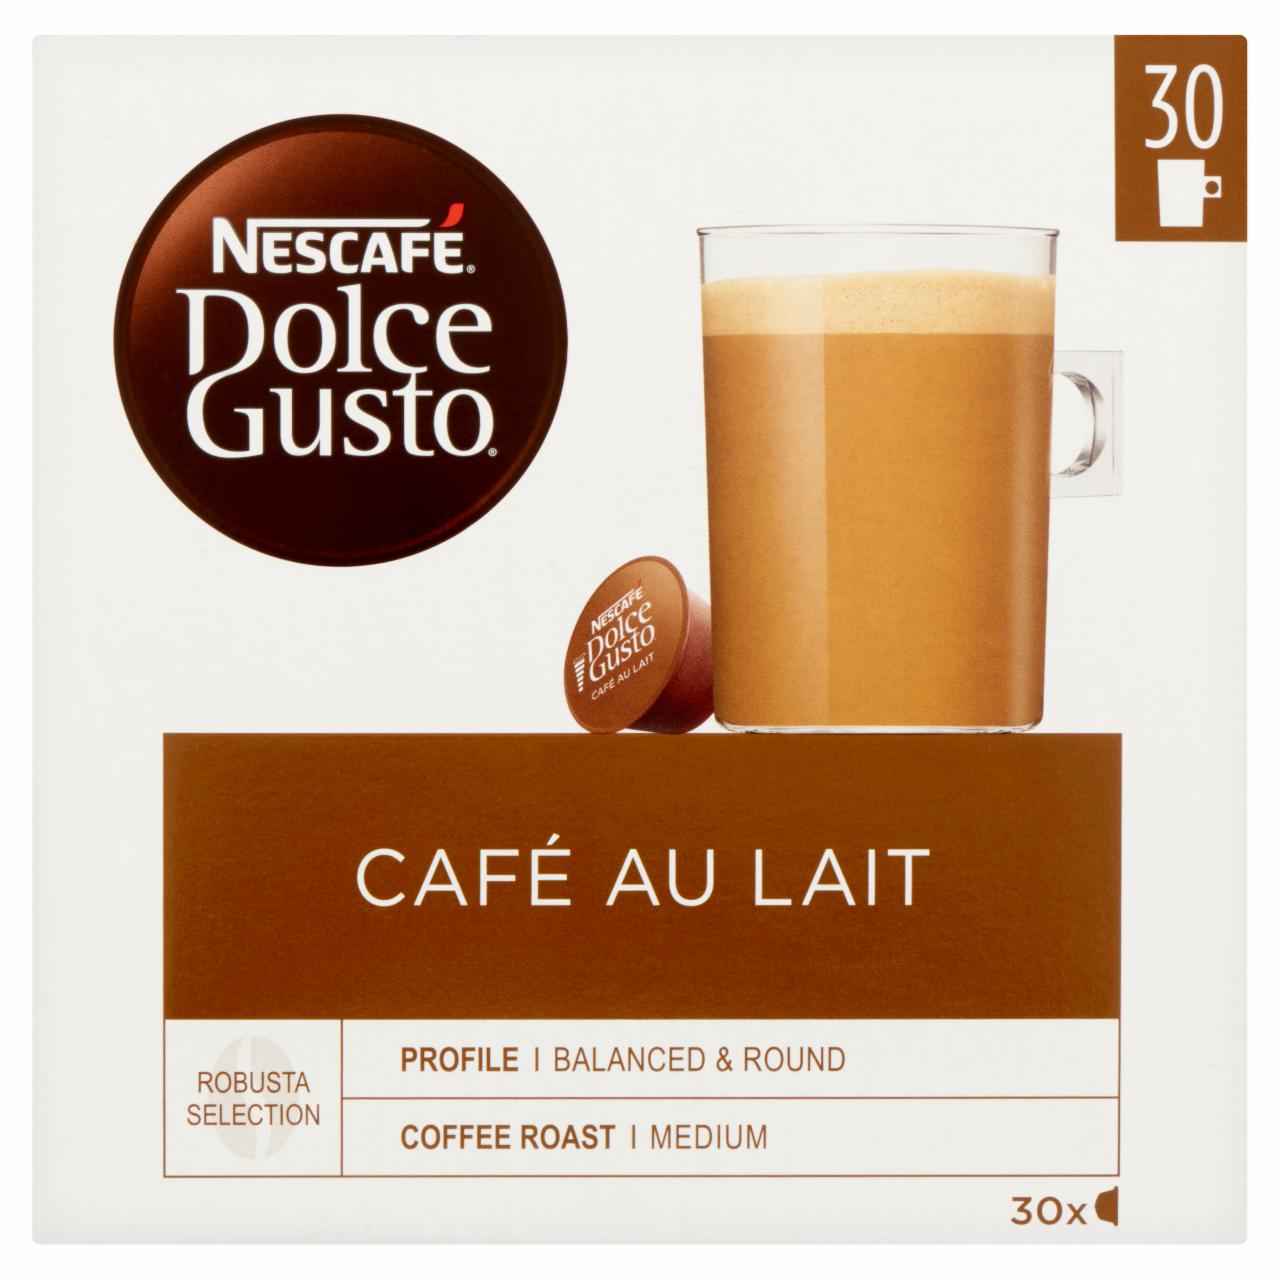 Képek - Nescafé Dolce Gusto Café au Lait tejes kávékapszula 30 db/30 csésze 300 g